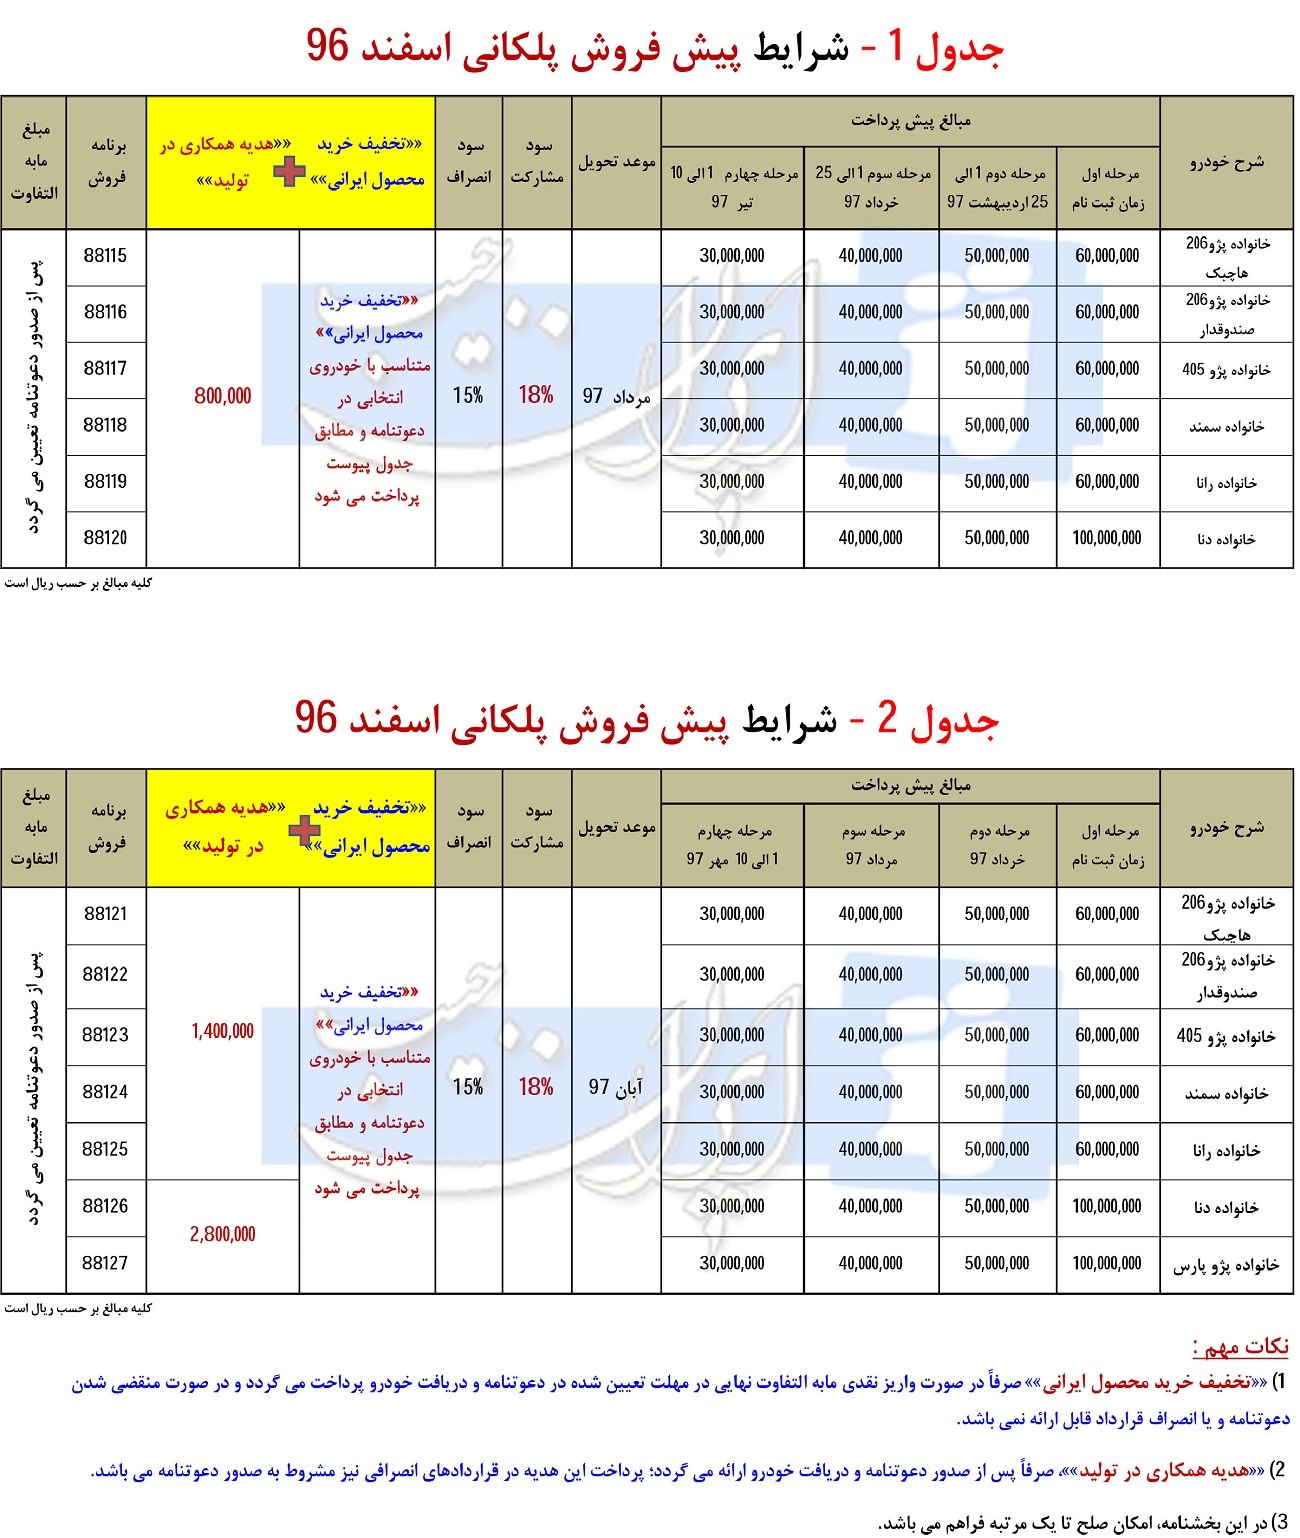 بخشنامه شماره 3 پیش فروش محصولات ایران خودرو ویژه اسفند 96 (سود مشارکت 18 درصد + تخفیف در خرید)